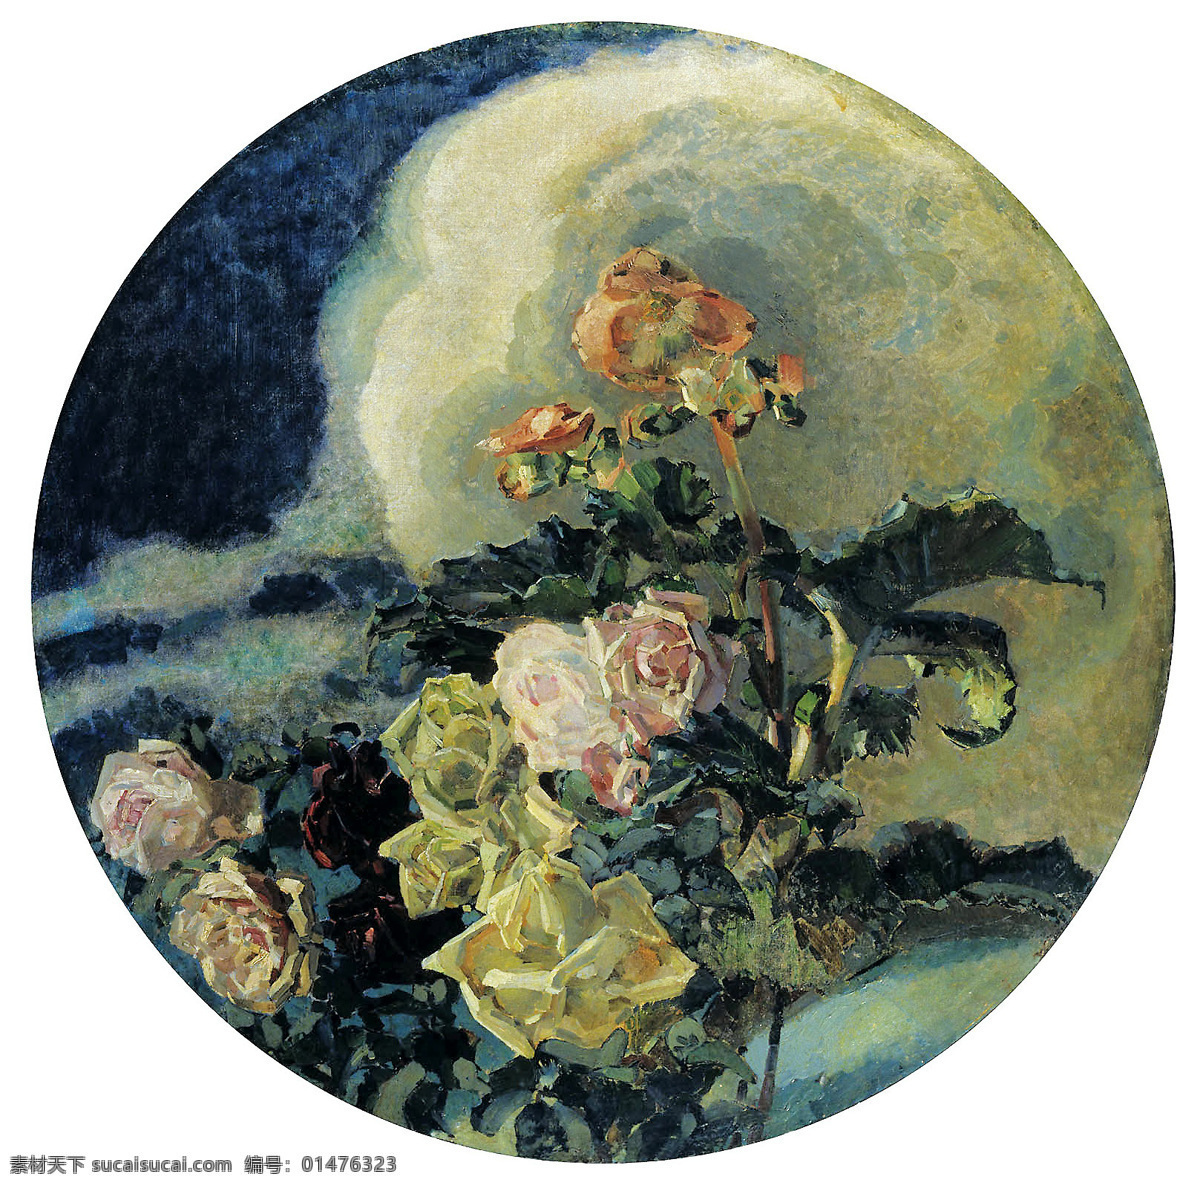 弗鲁贝尔 黄玫瑰 俄罗斯 油画 艺术世界 新艺术风格 花卉 绘画 俄罗斯绘画 绘画书法 文化艺术